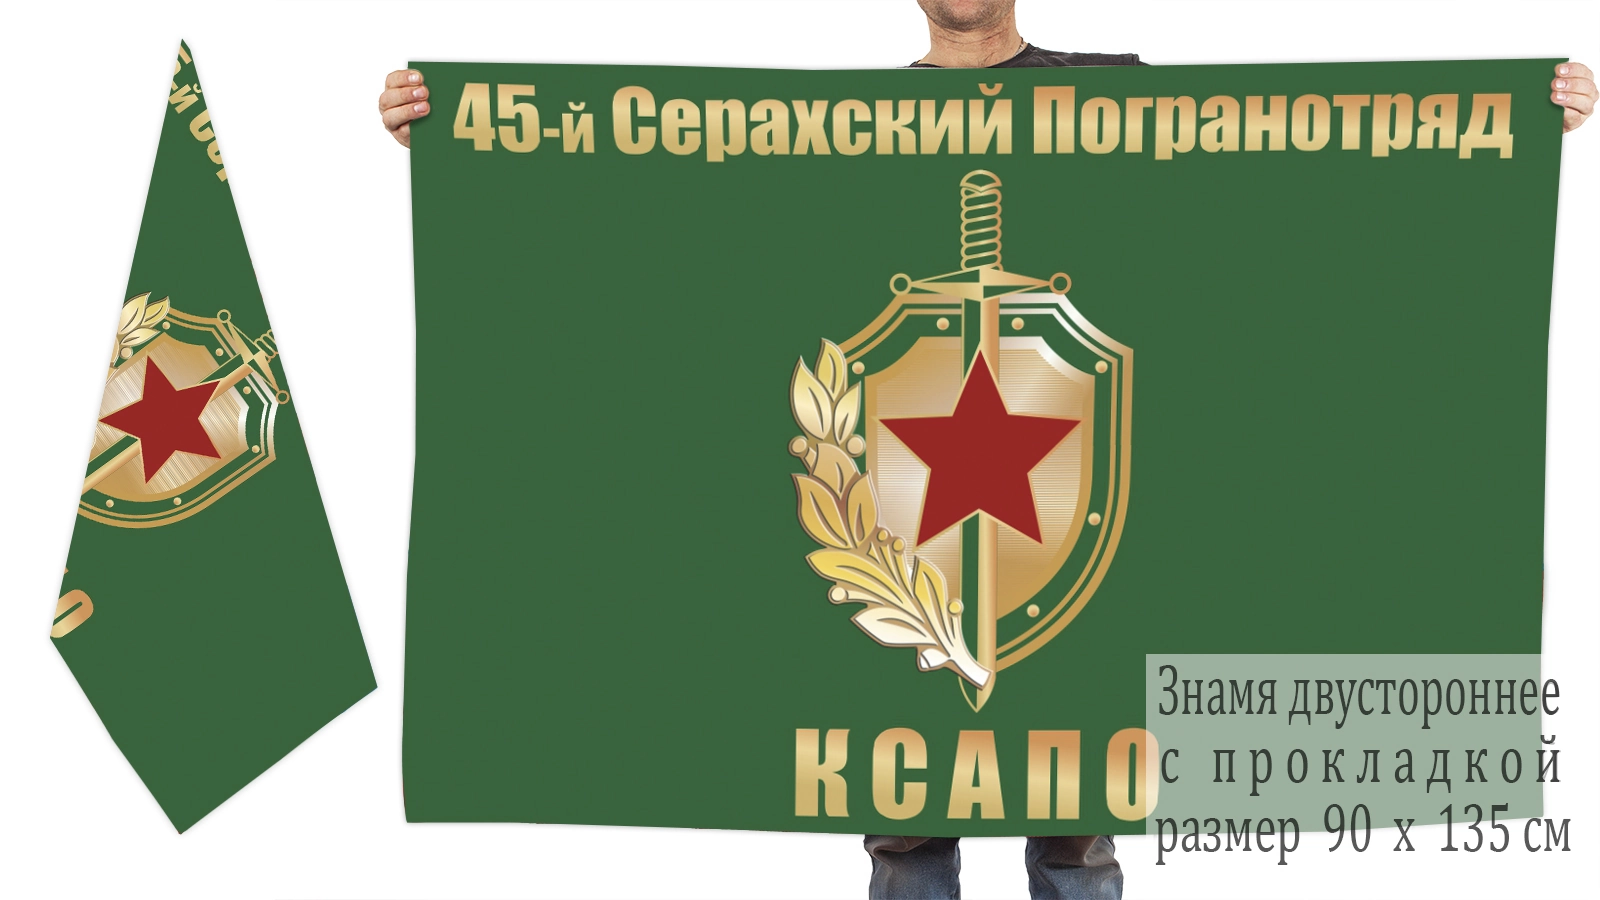 Двусторонний флаг 45 Серахского погранотряда КСАПО